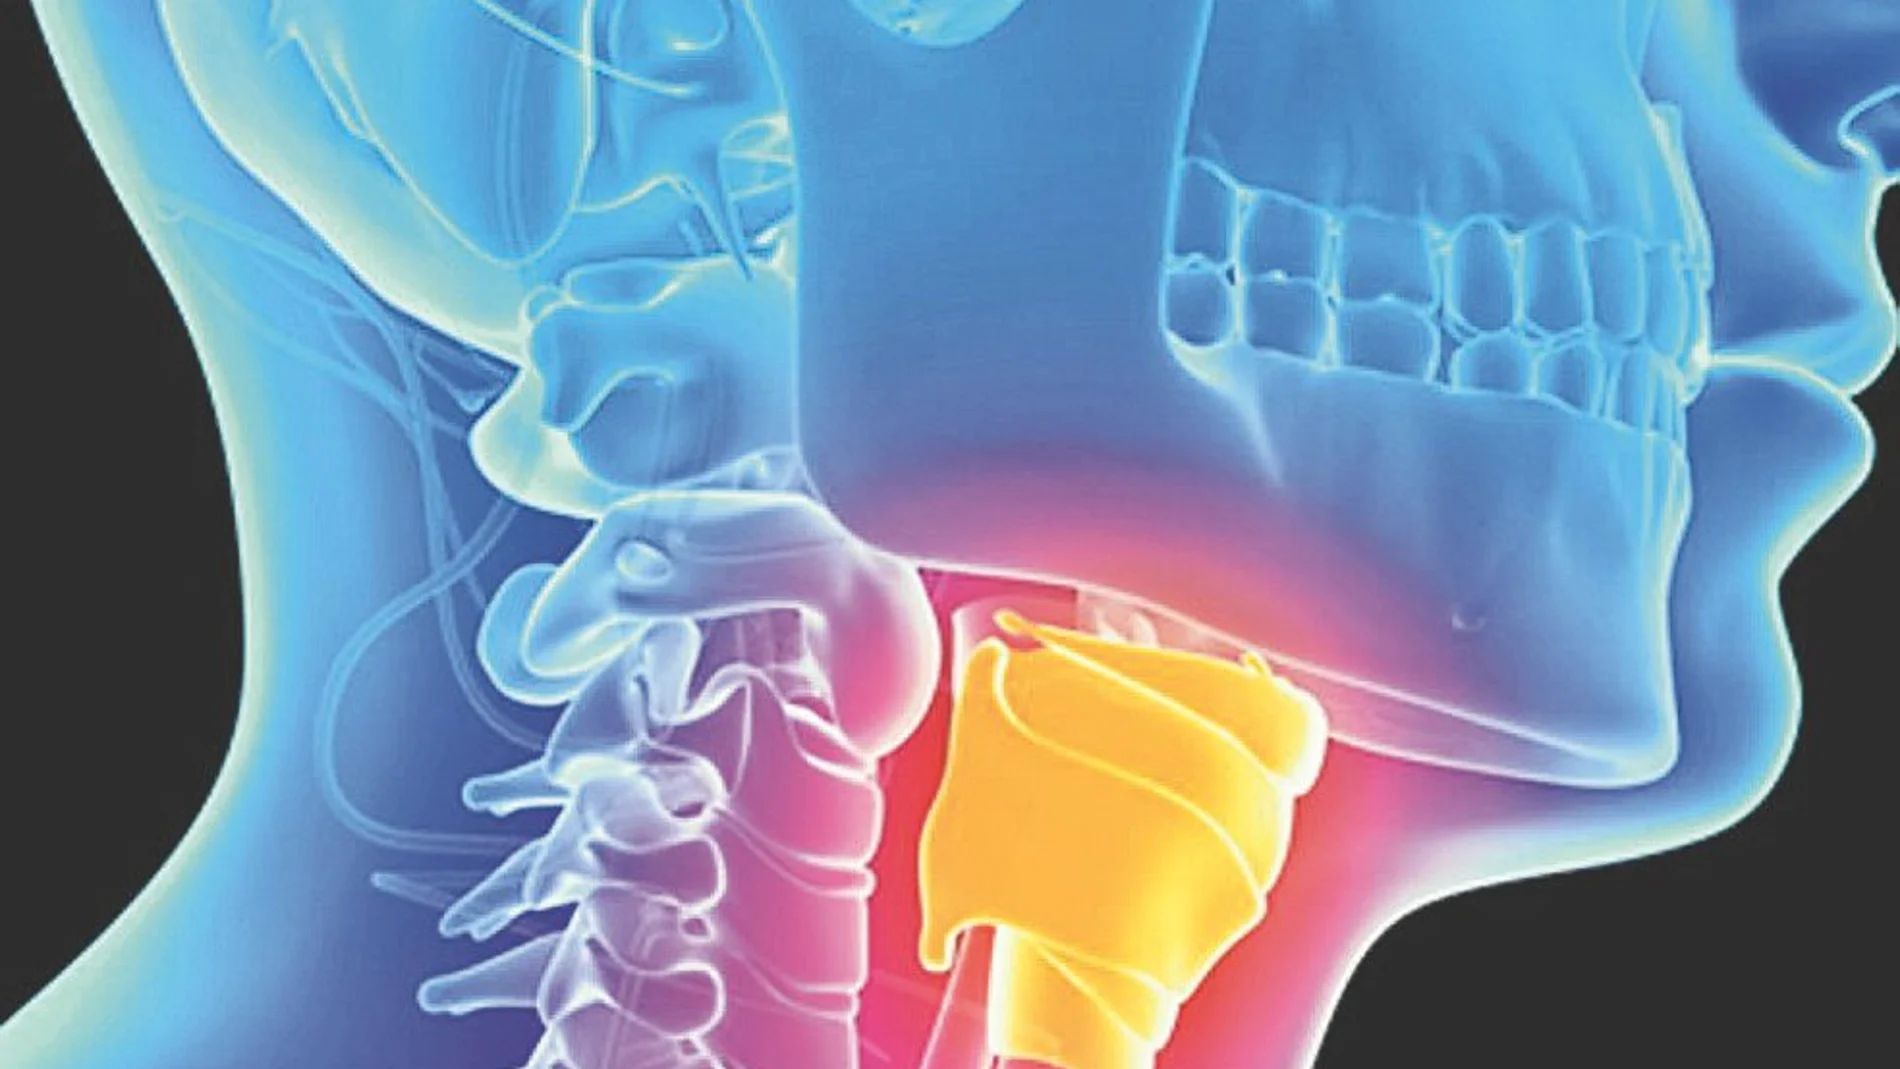 Con esta técnica se conservan las estructuras anatómicas de la laringe, que permitirán una mejor función respiratoria, fonatoria y deglutoria